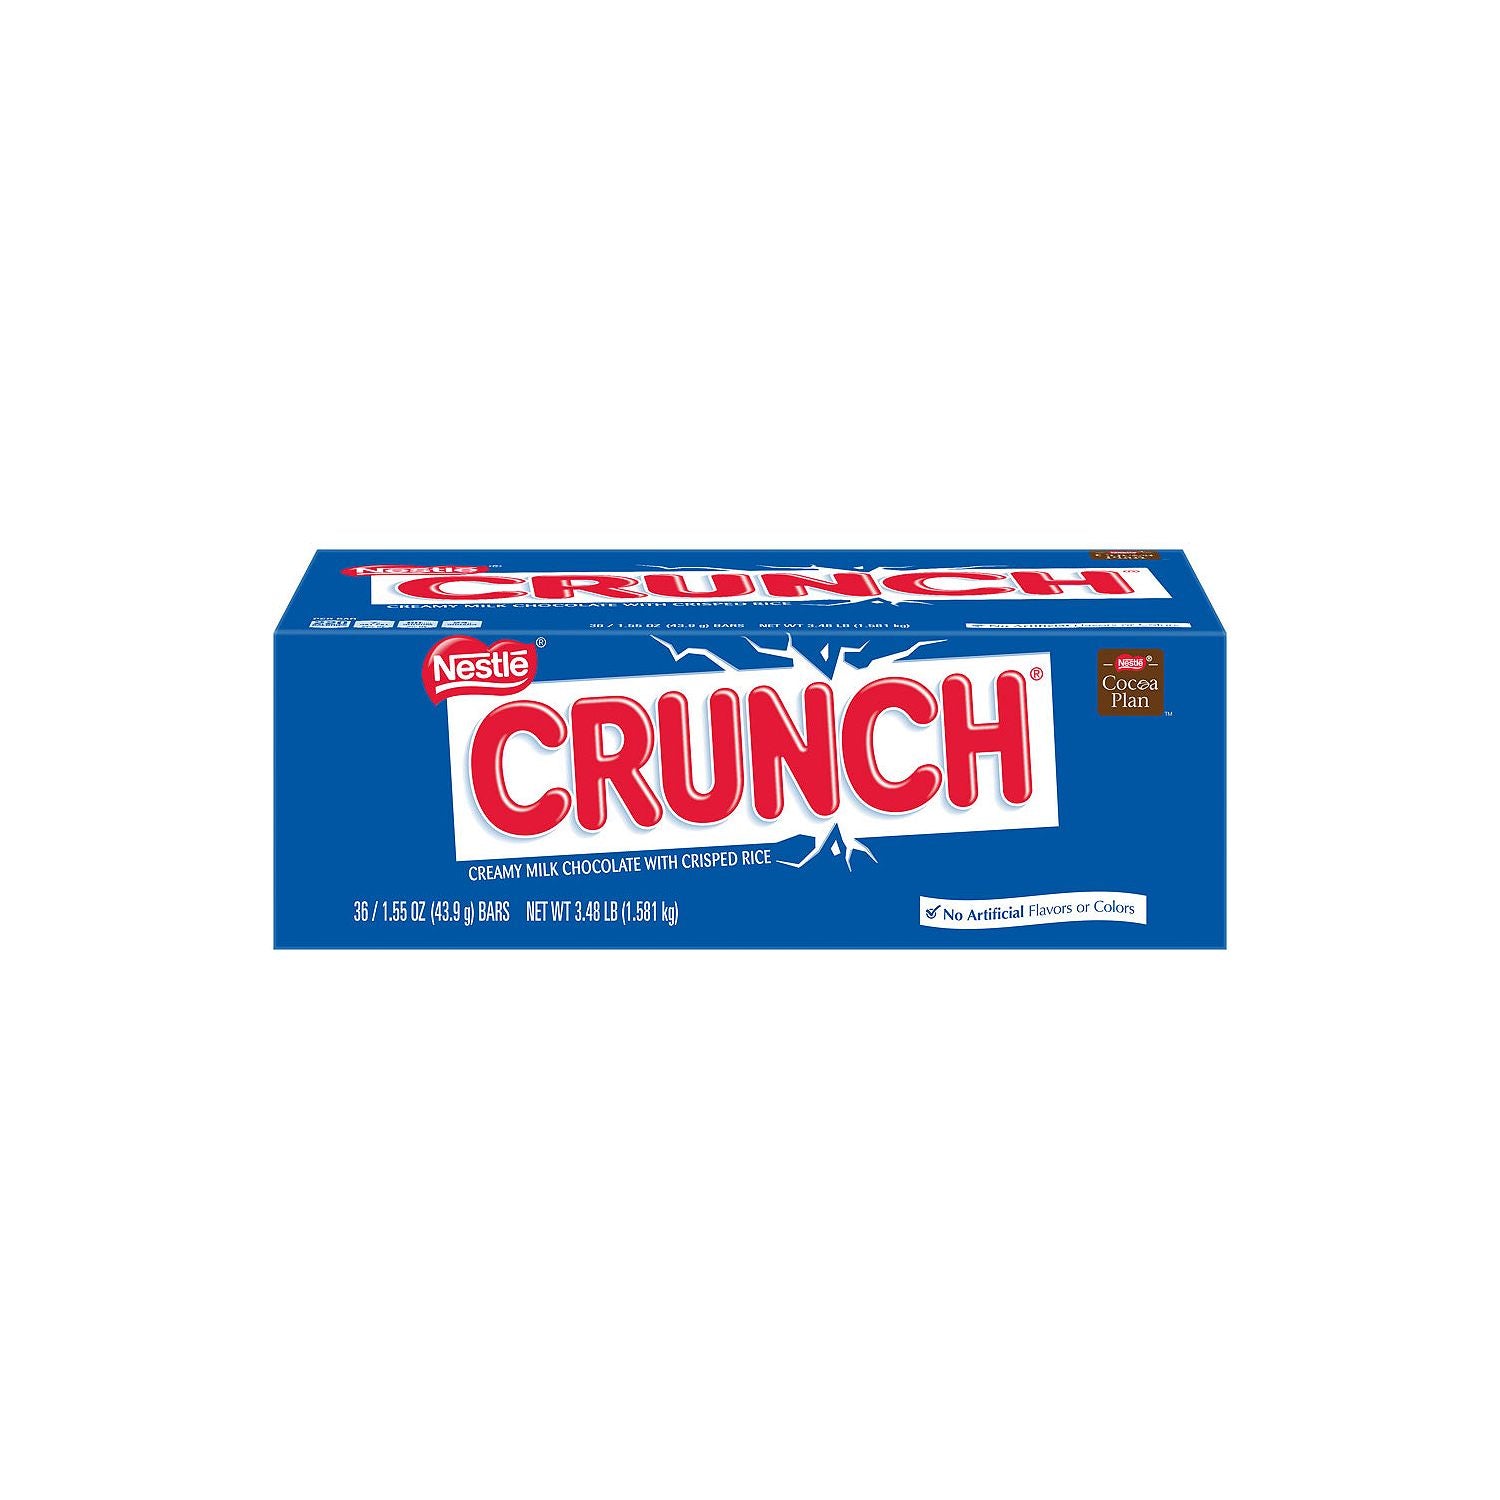 Crunch Milk Chocolate Candy Bar 1.55 oz.